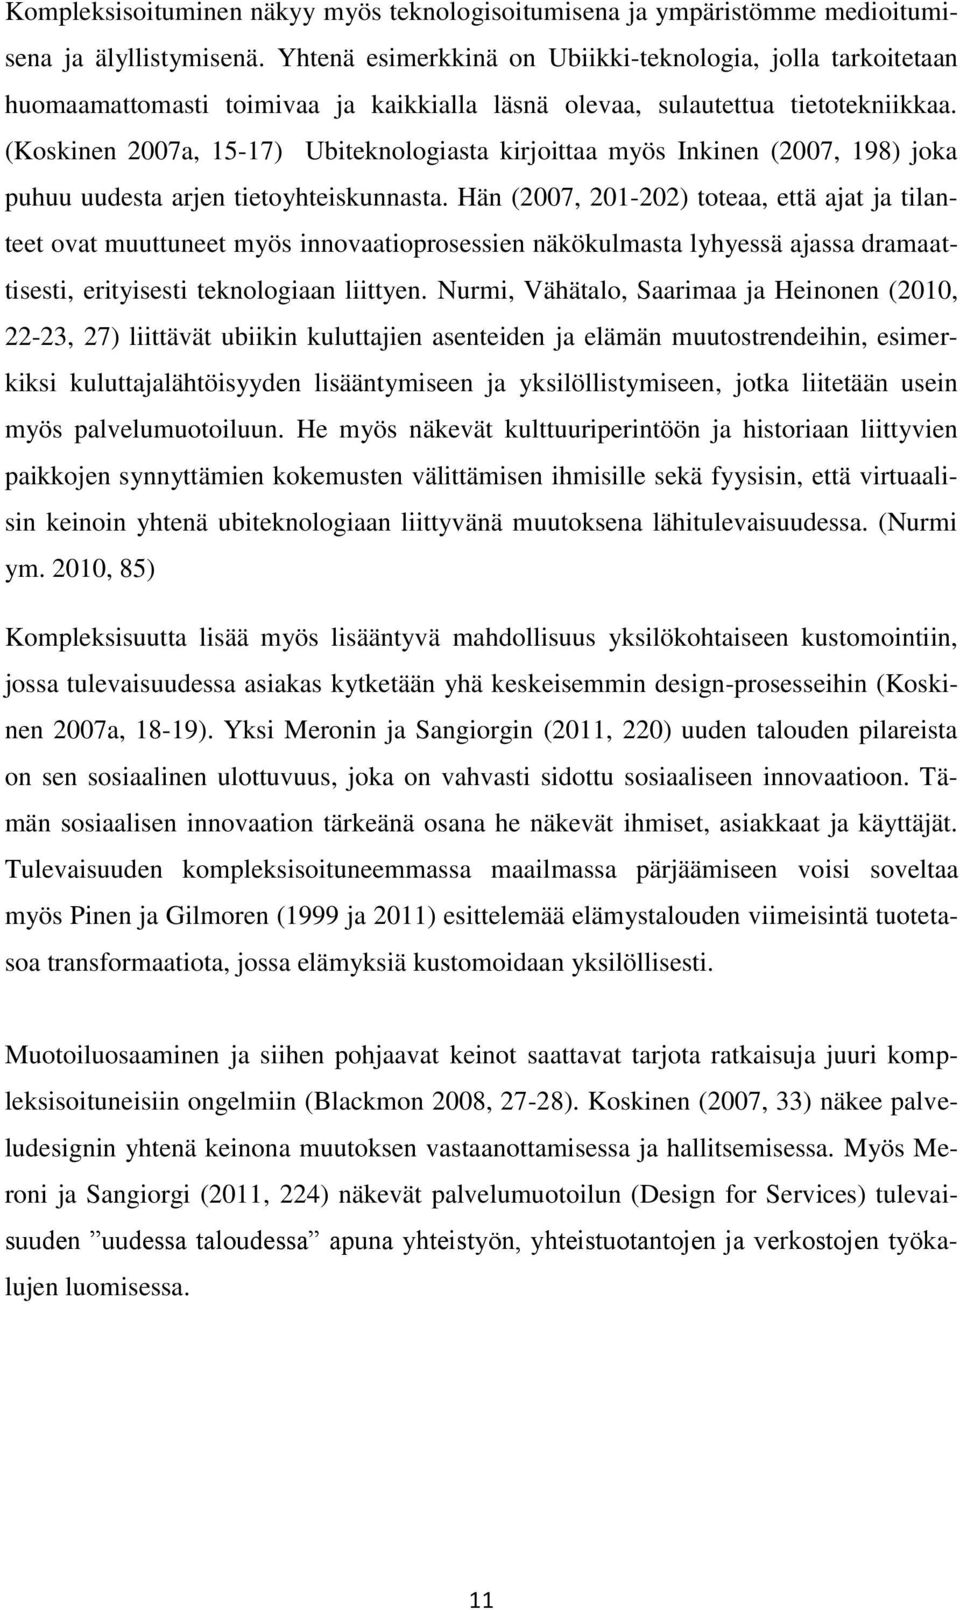 (Koskinen 2007a, 15-17) Ubiteknologiasta kirjoittaa myös Inkinen (2007, 198) joka puhuu uudesta arjen tietoyhteiskunnasta.